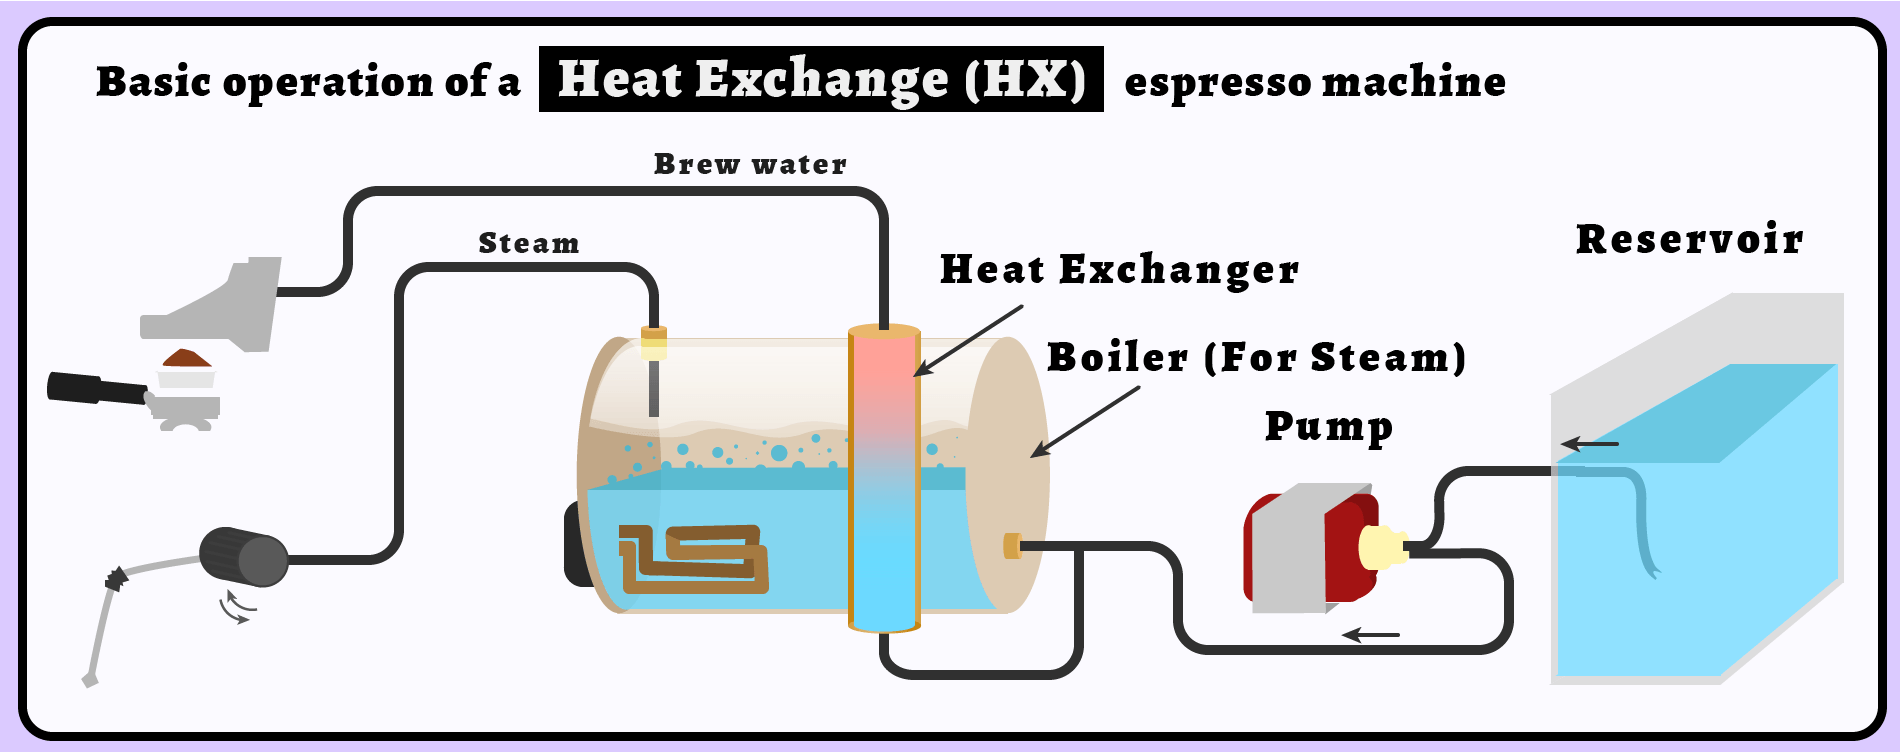 cupandbrew-how_it_works-_heat_exchanger_espresso_machine.png